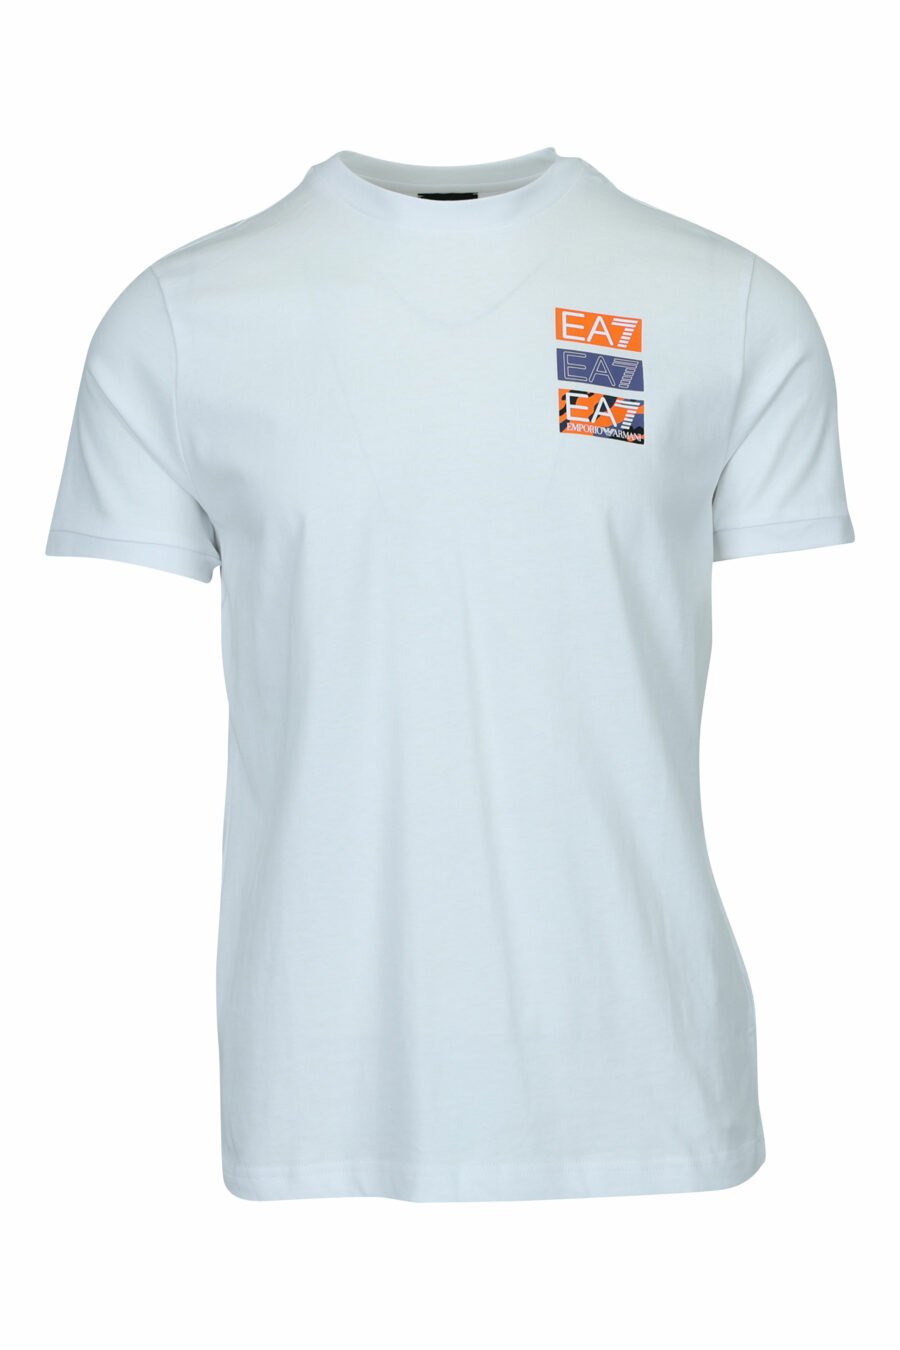 Weißes T-Shirt mit Camouflage "lux identity" Minilogo und Druck auf dem Rücken - 8057970669838